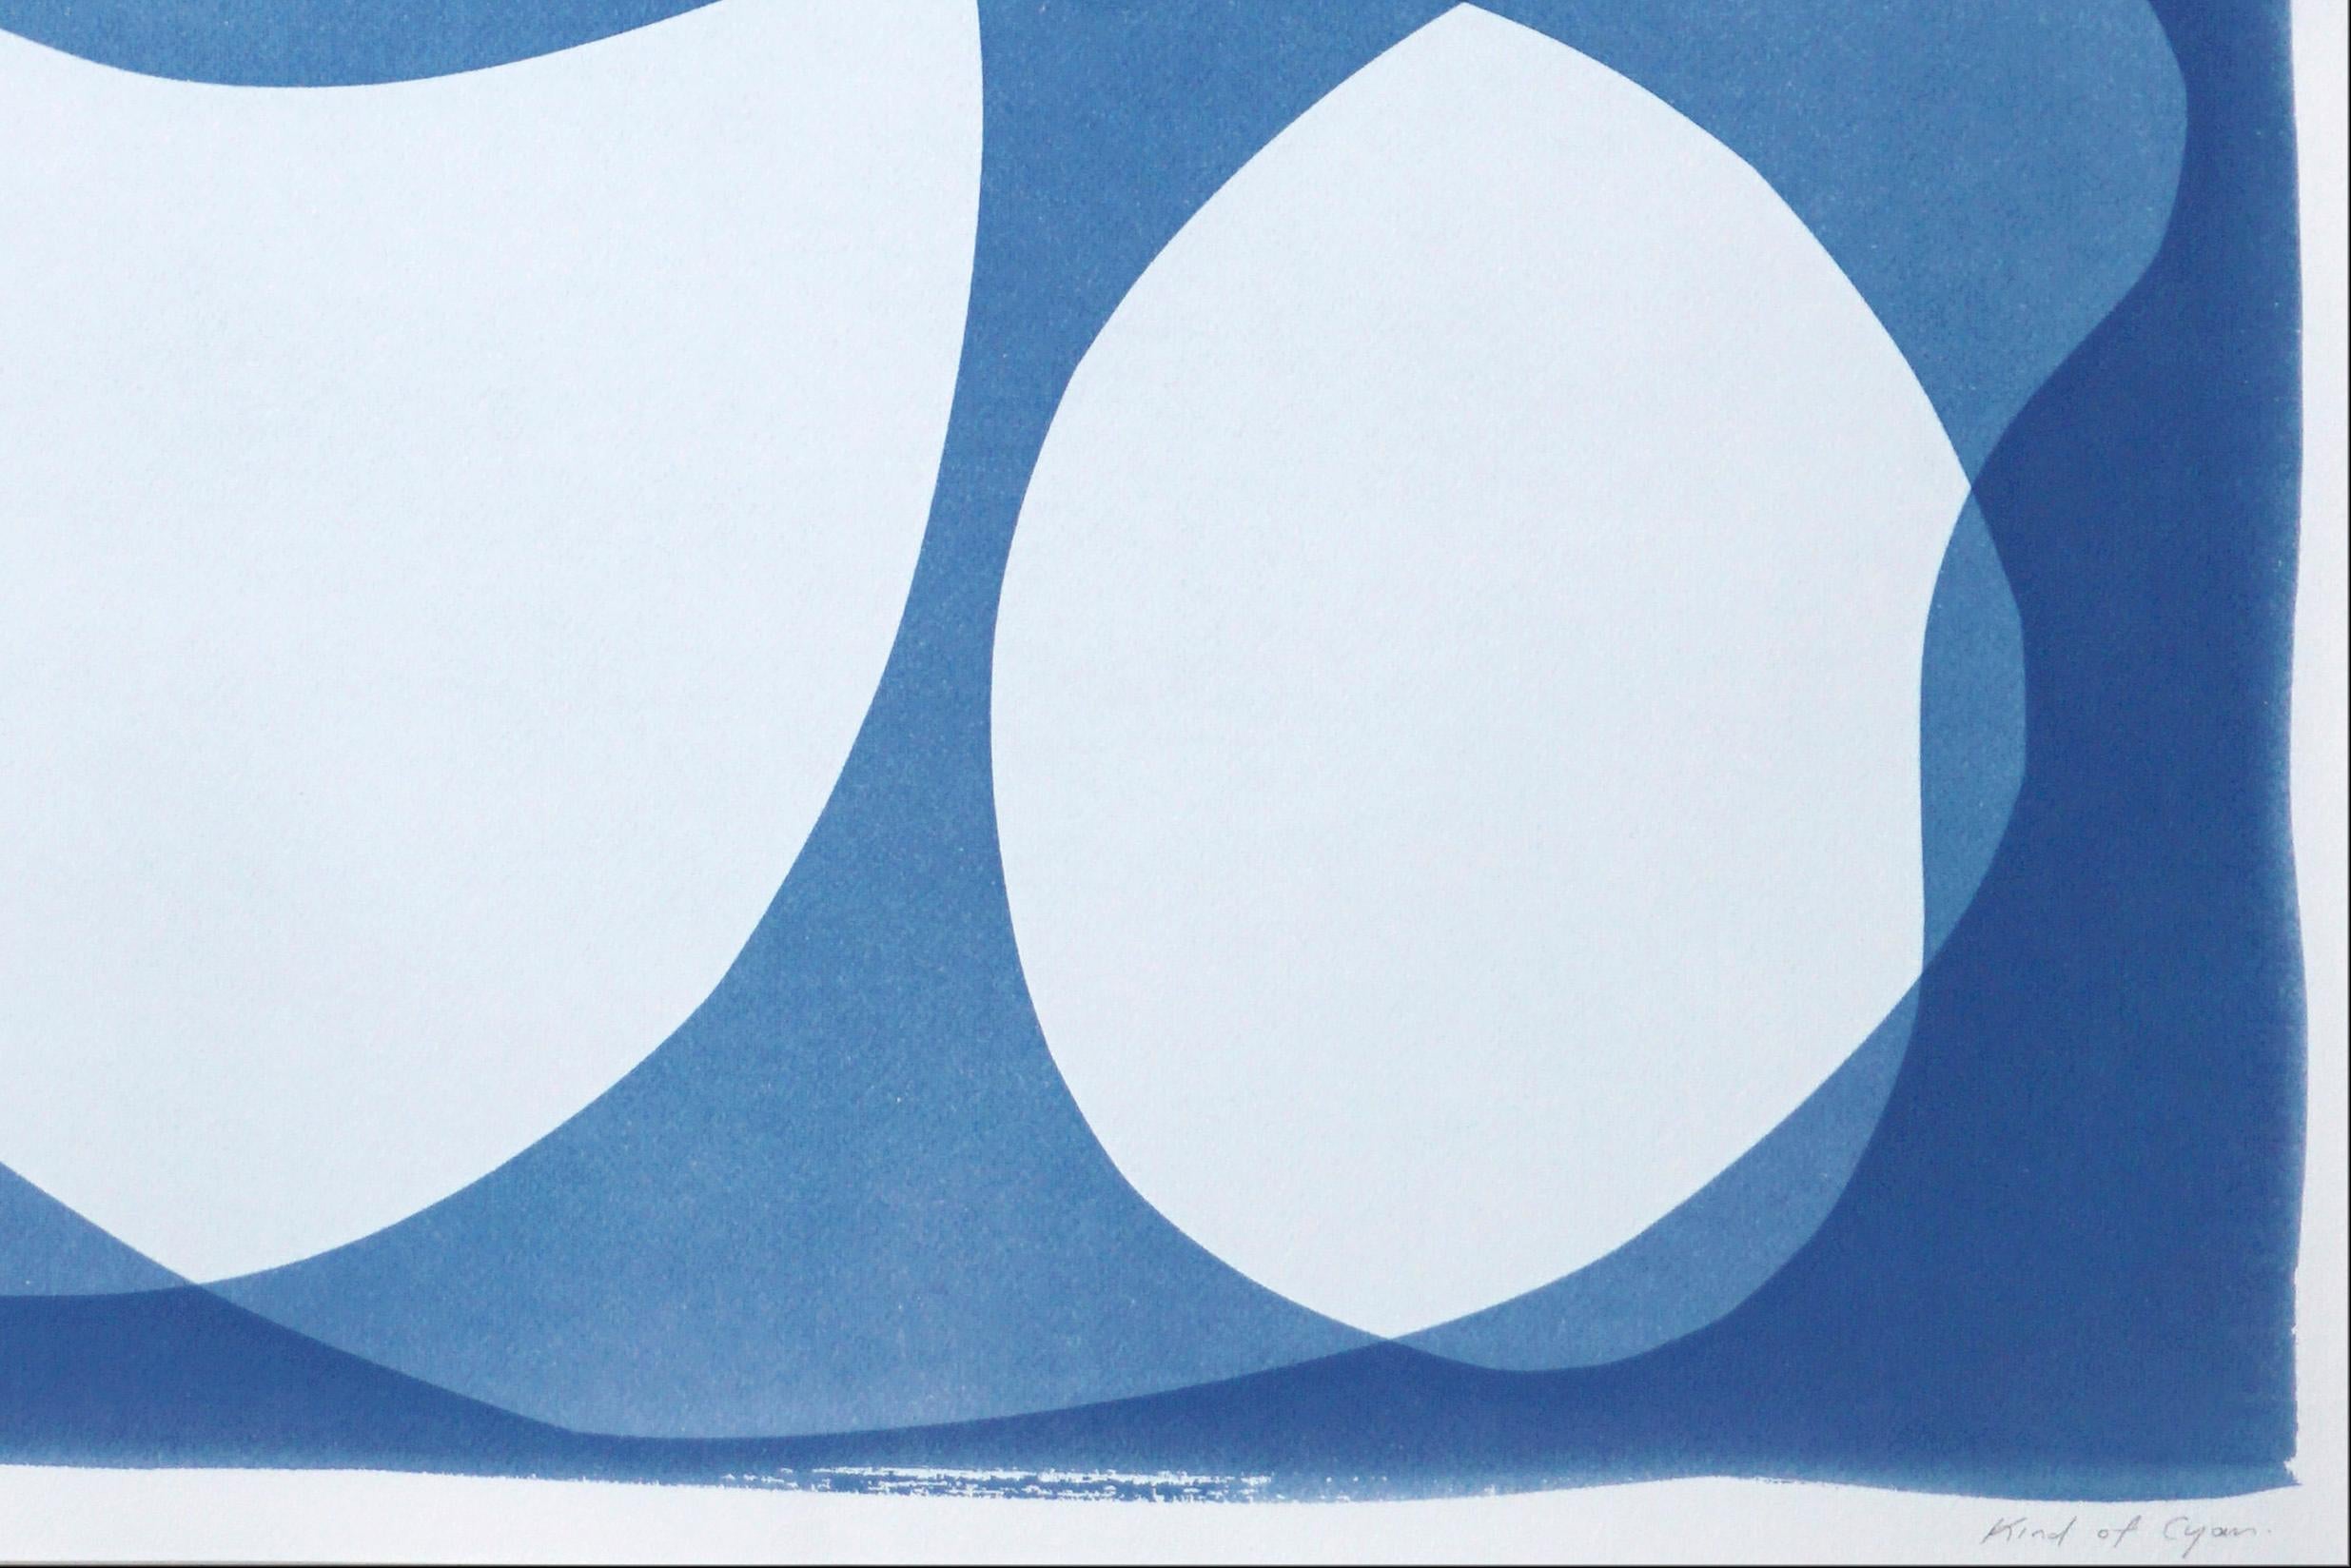 Handgefertigte Monotypie eines abstrakten, abgerundeten Typs, moderne Formen und Schichten, blaue Töne (Art déco), Print, von Kind of Cyan